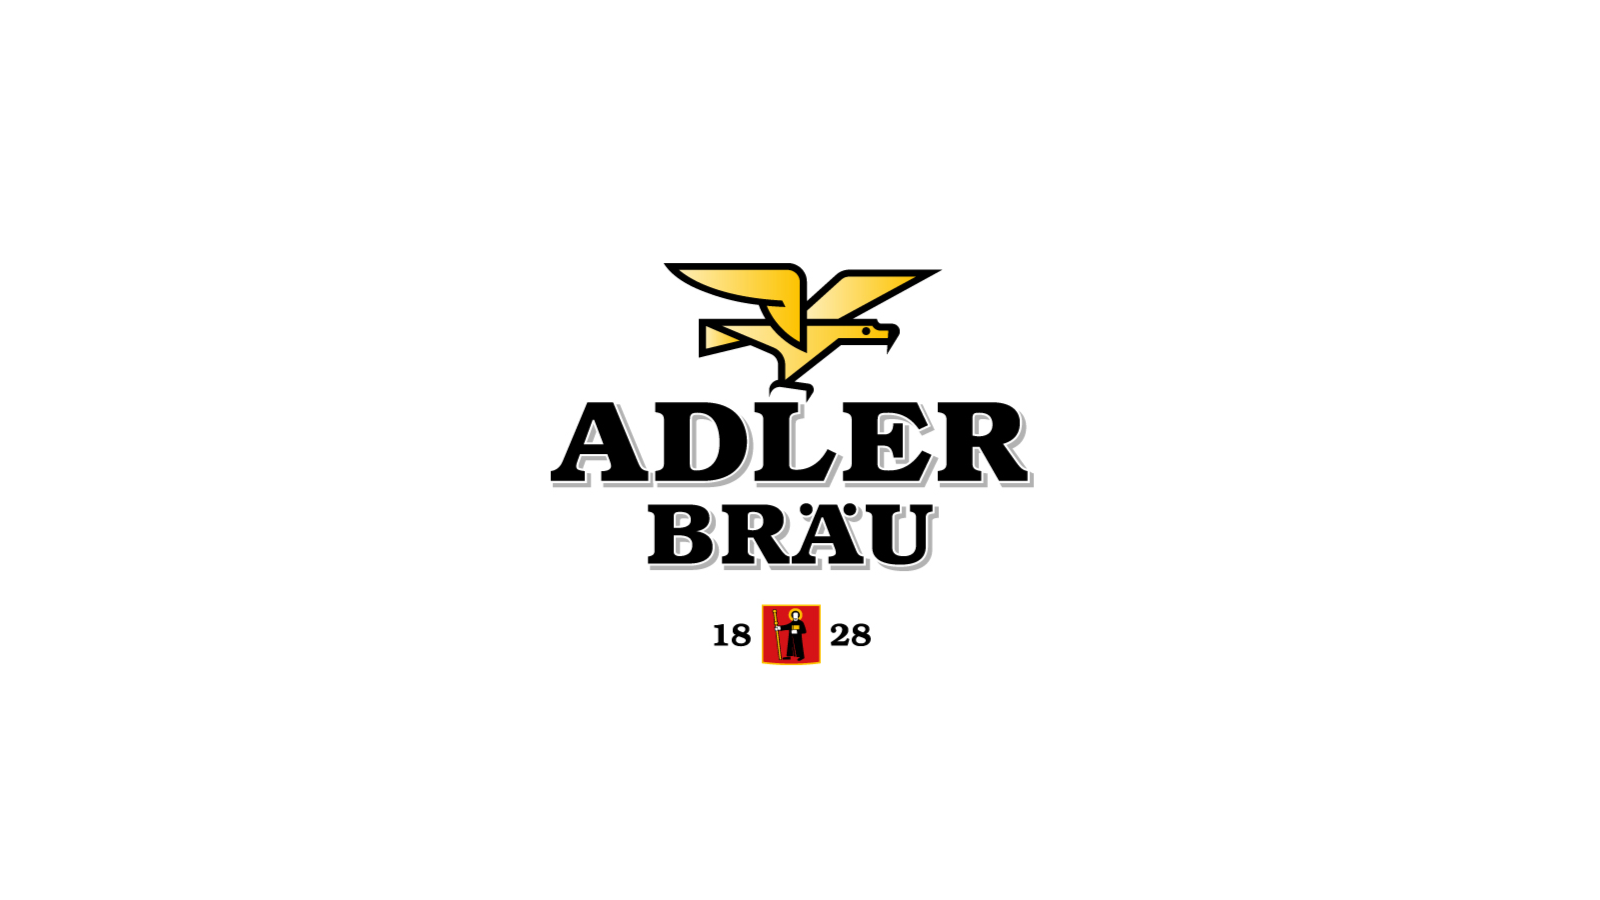 Adlerbräu